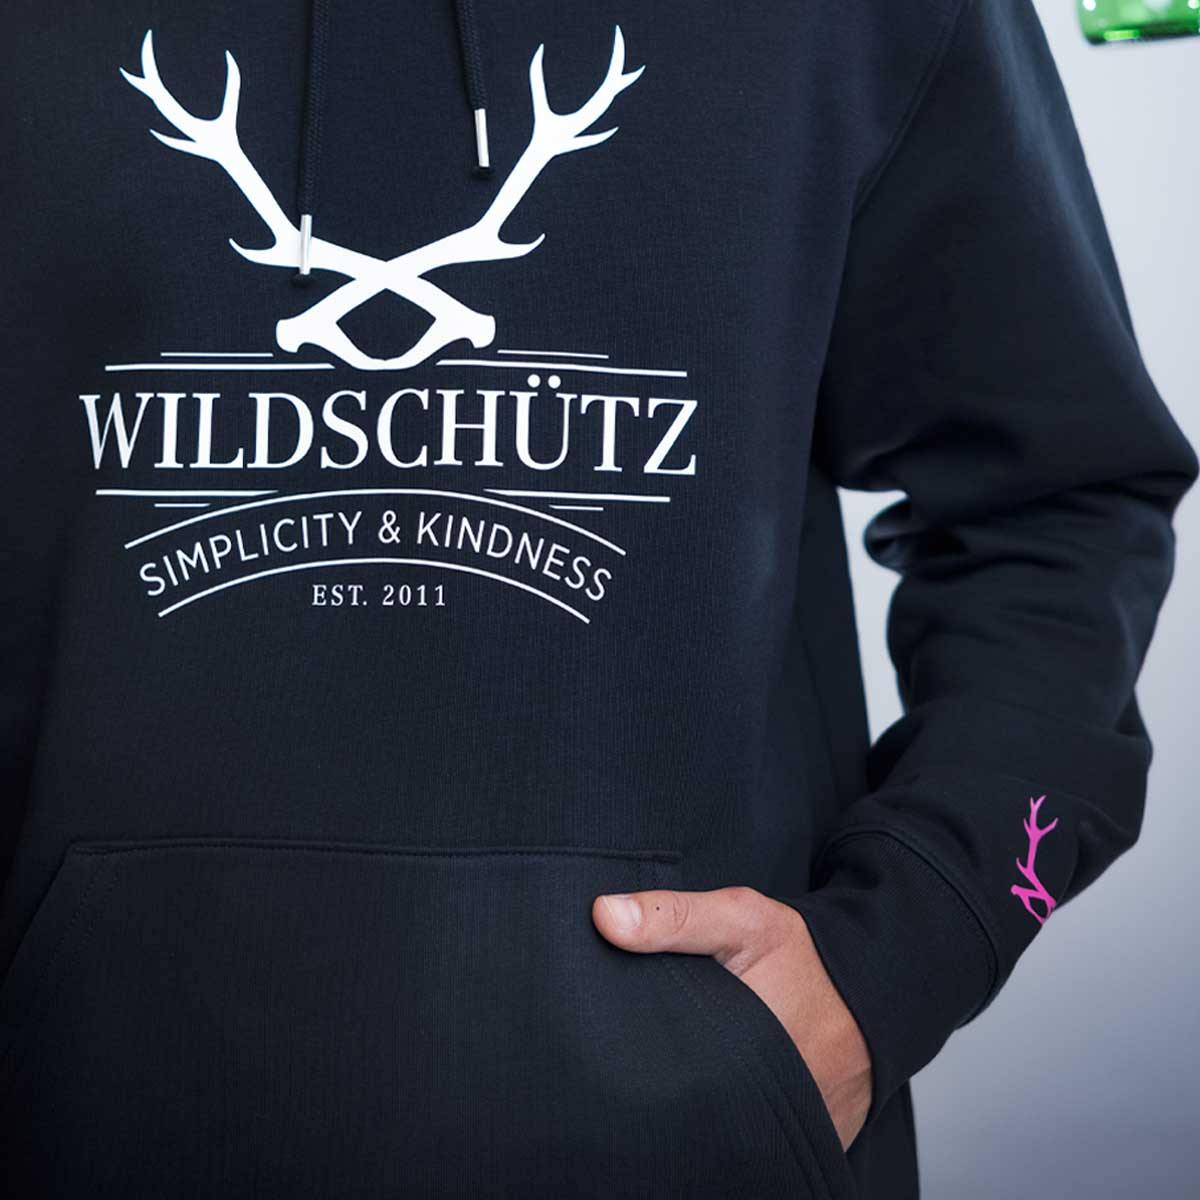 Hoodie "Wildschütz" - wise enough